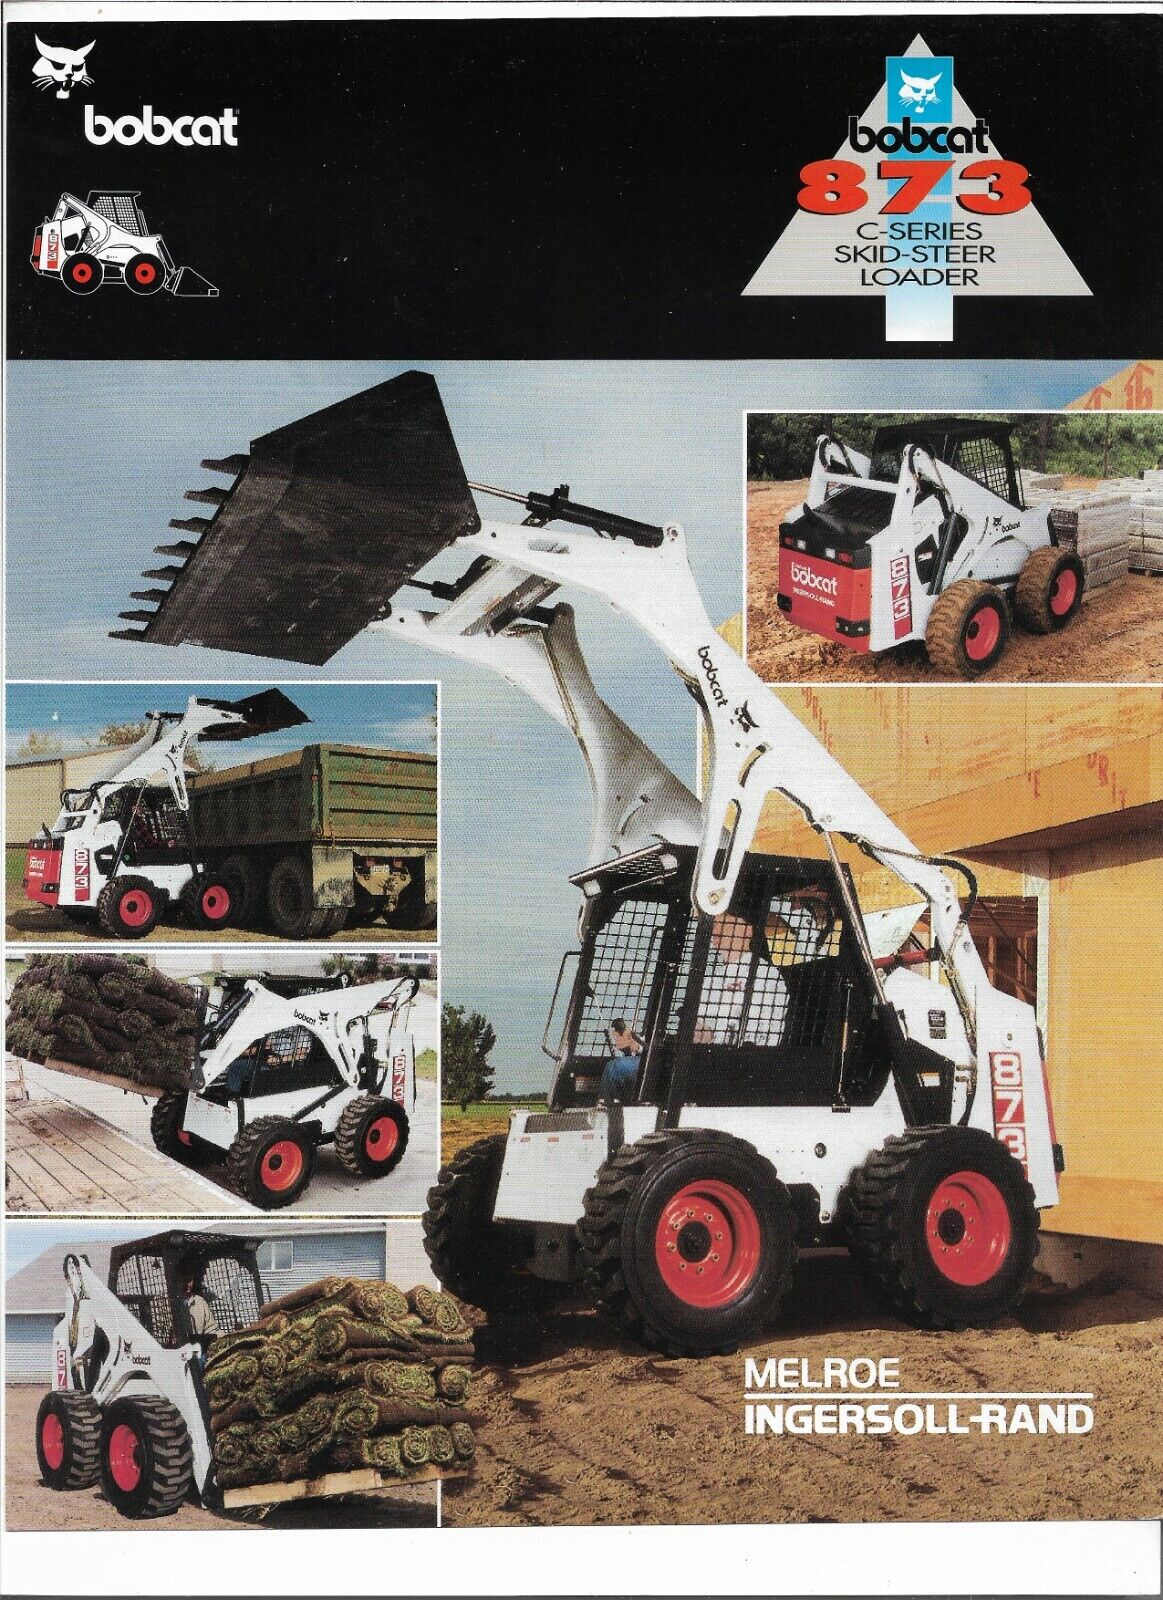 Original OE OEM Bobcat 873 C Series Skid Steer Loader Sales Brochure Spec Sheet